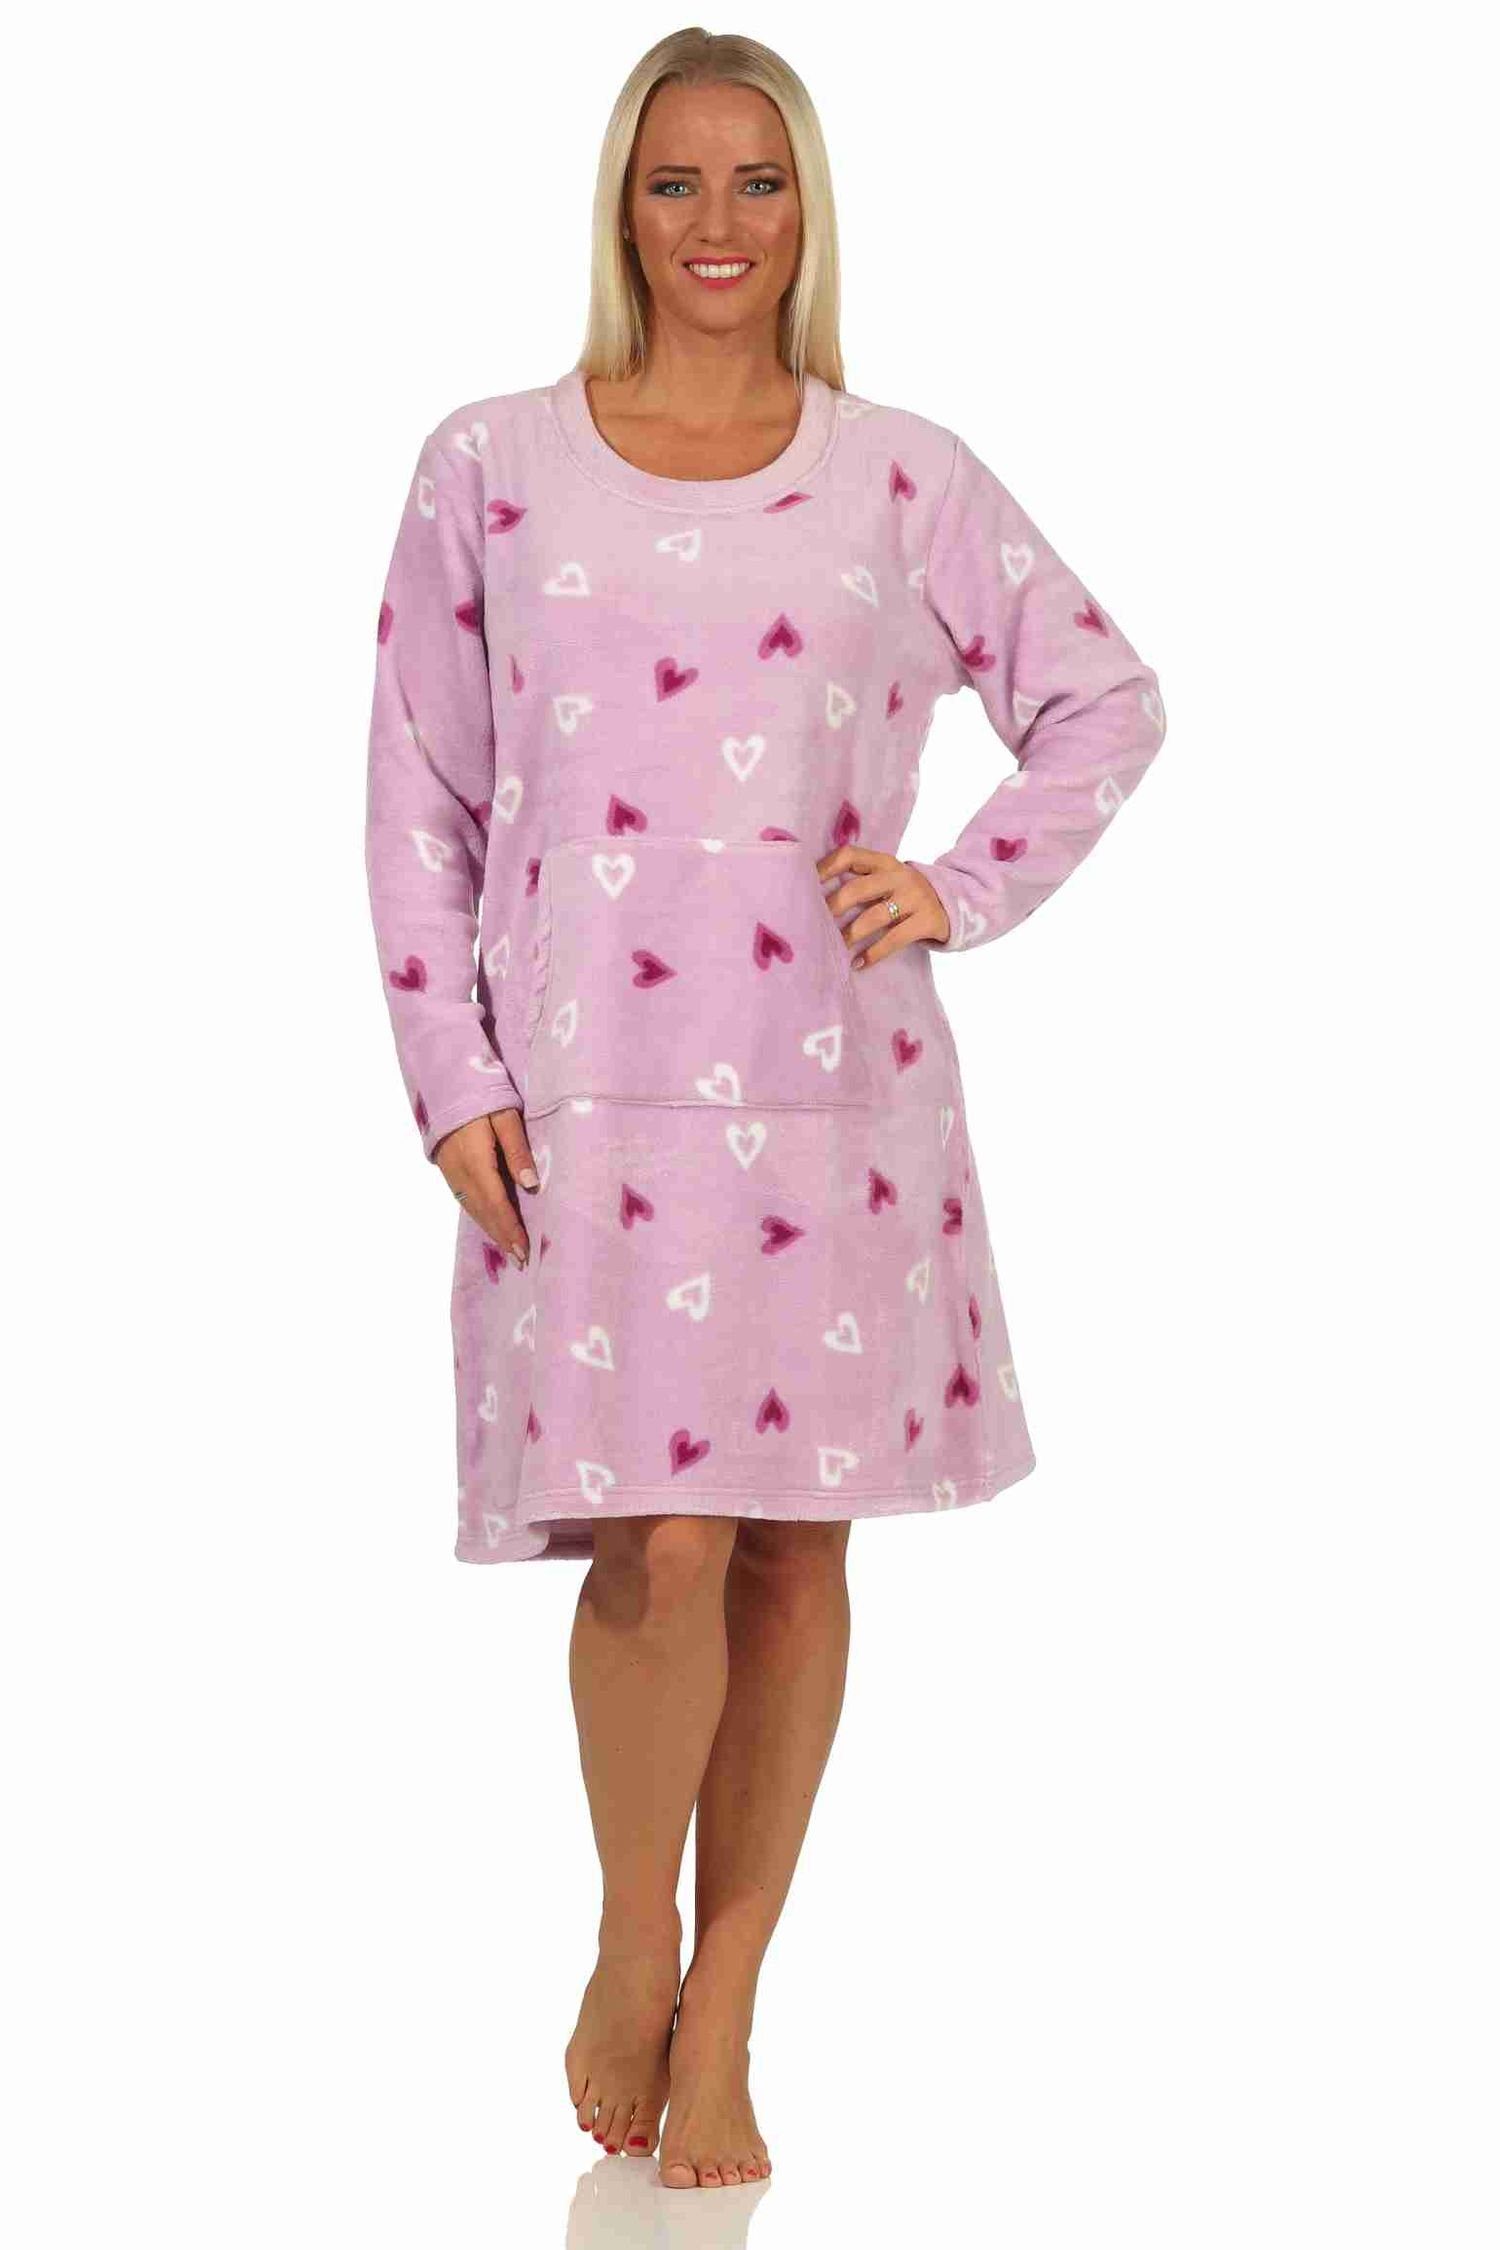 Normann Nachthemd Damen Nachthemd Hauskleid aus softem Coralfleece in Herz-Motiv Optik flieder | Nachthemden